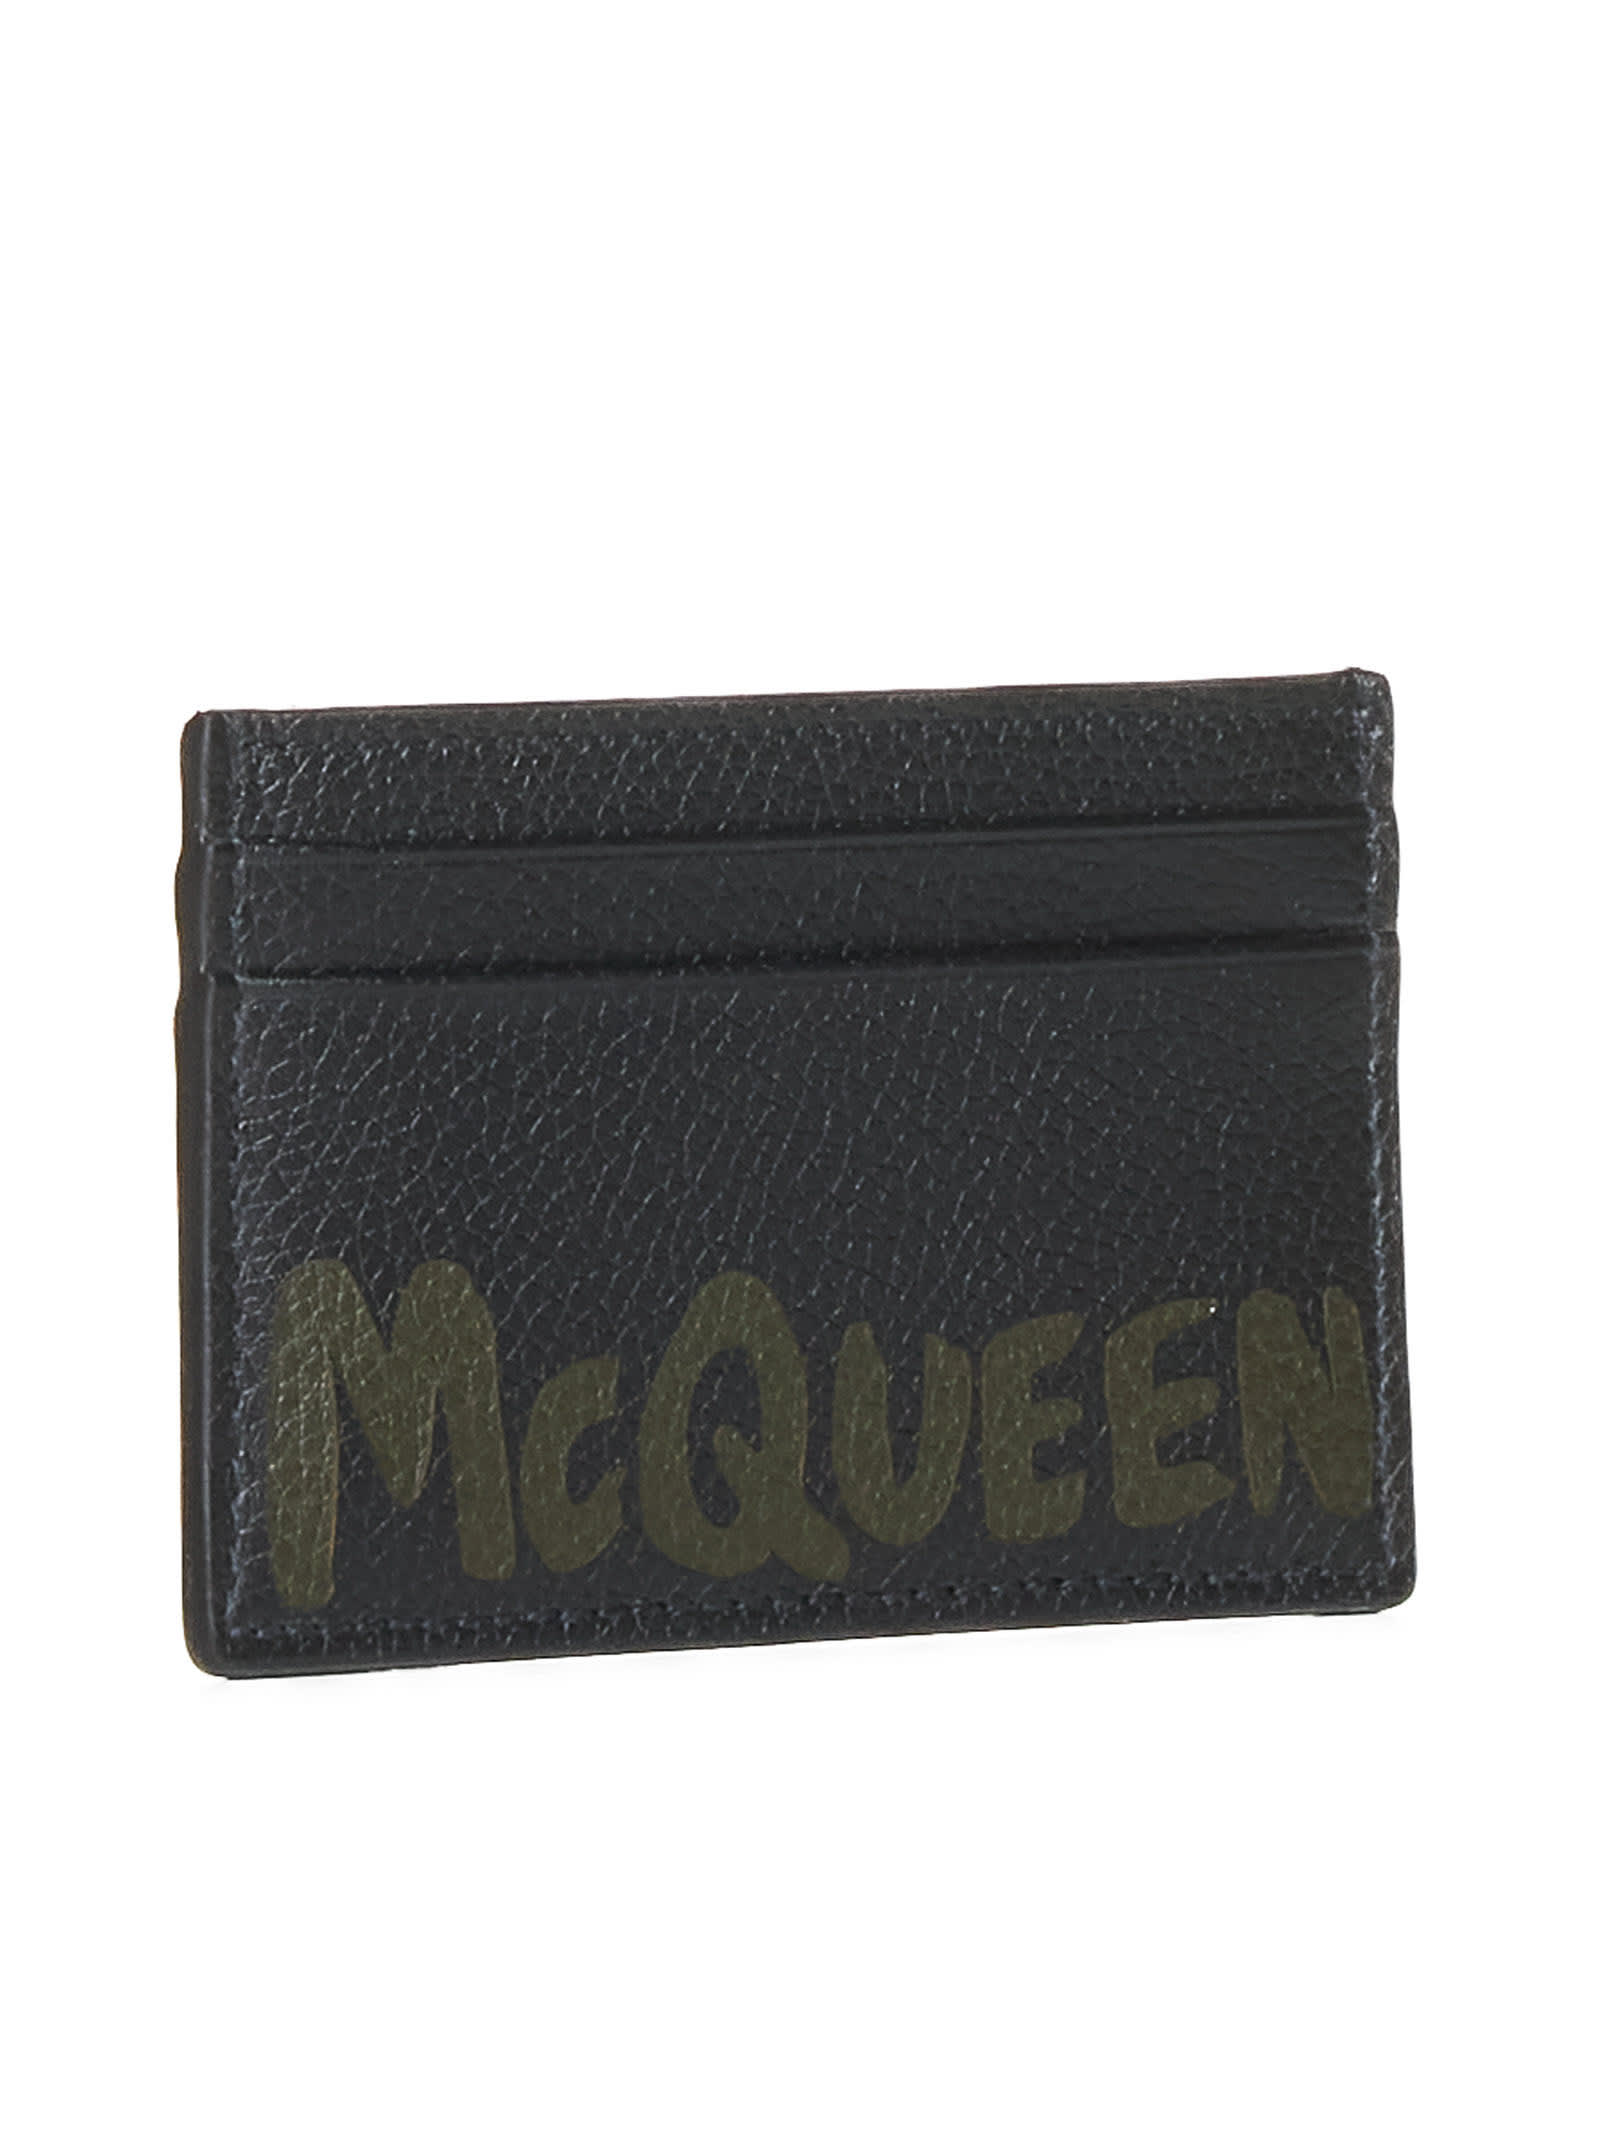 Shop Alexander Mcqueen Wallet In Black/khaki